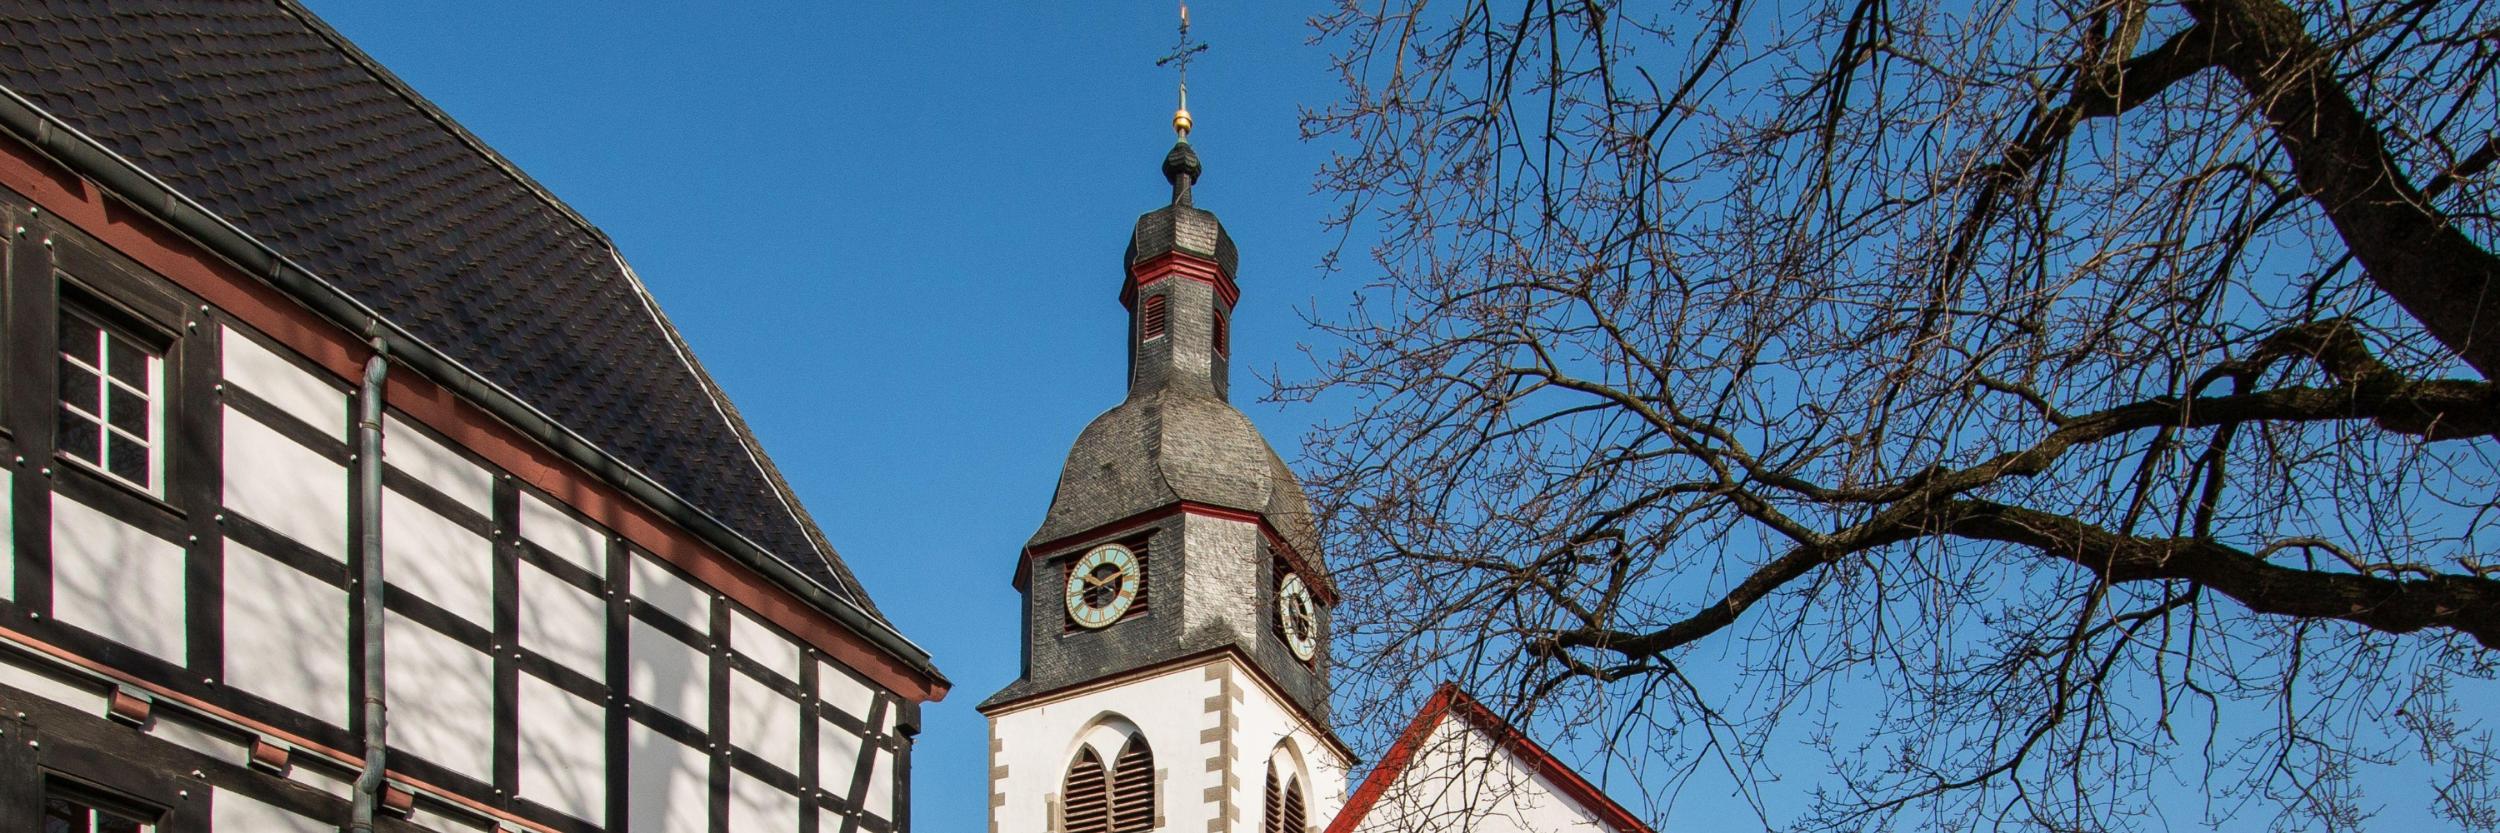 St. Martin Pfarrkirche Rheinbach